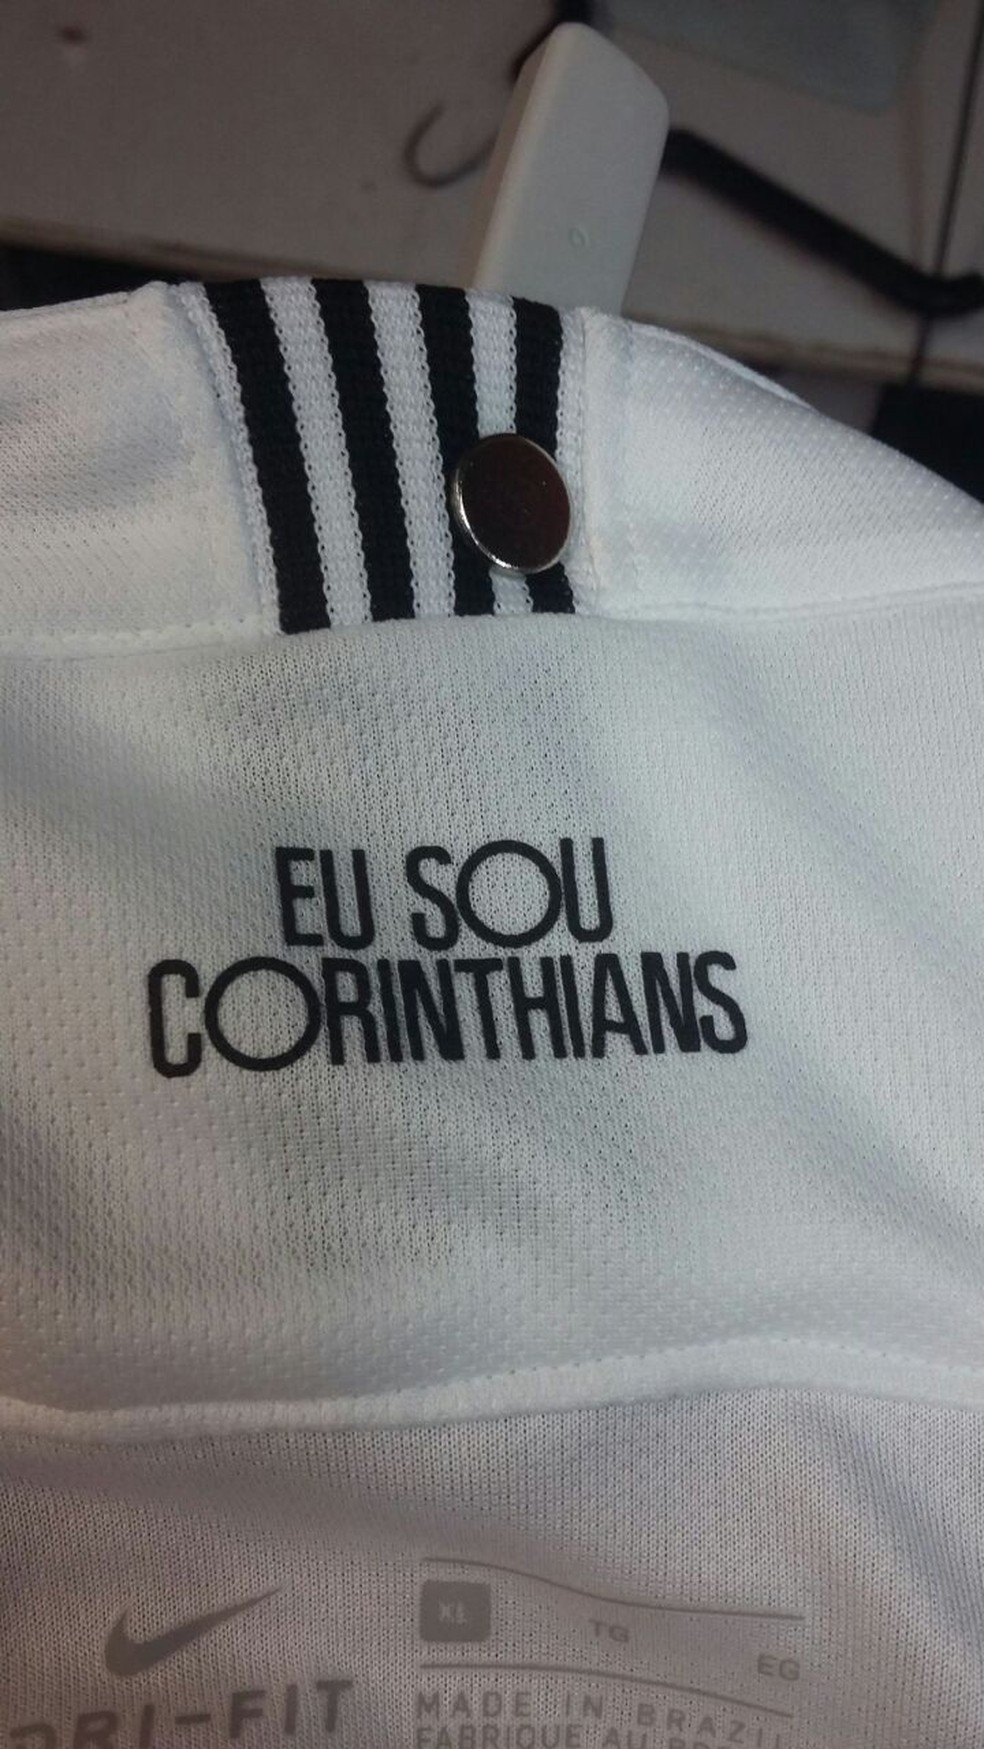 "Eu sou Corinthians" Ã© a frase da nova camisa  (Foto: ReproduÃ§Ã£o)